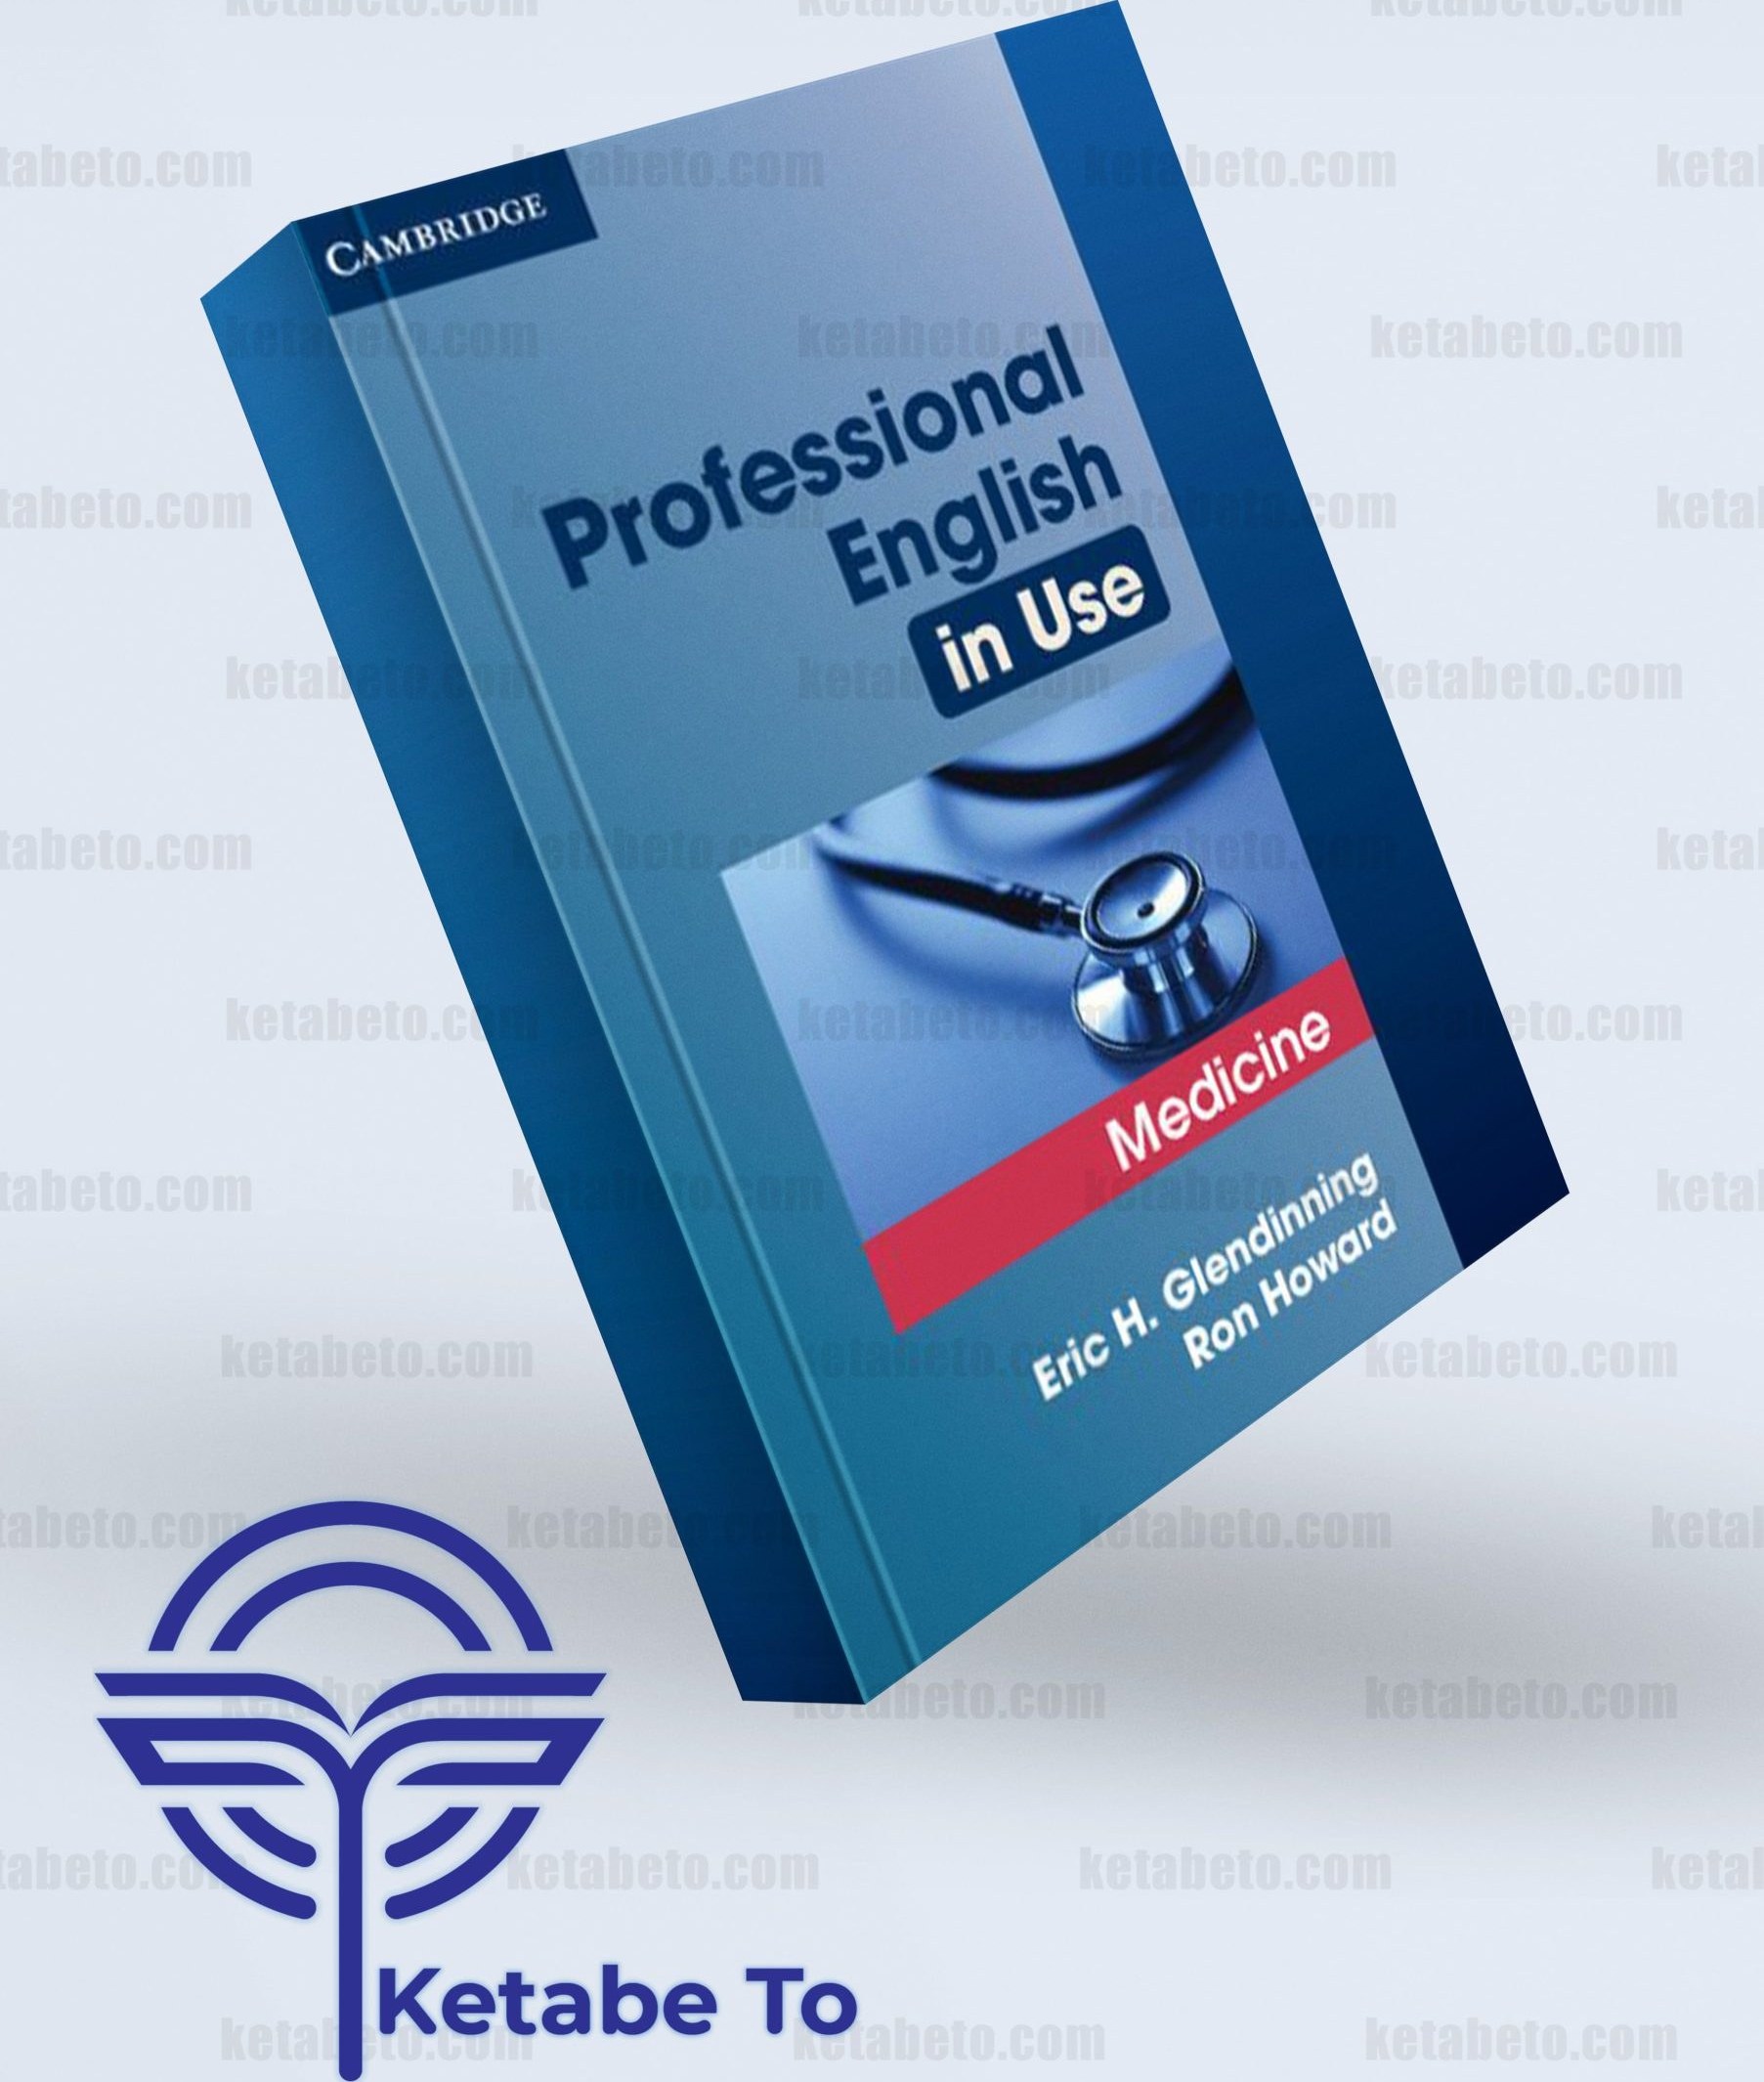 کتاب　انگلیش　یوز　خرید　ترب　Use　این　Professional　English　و　in　قیمت　پروفشنال　مدیسین　Medicine